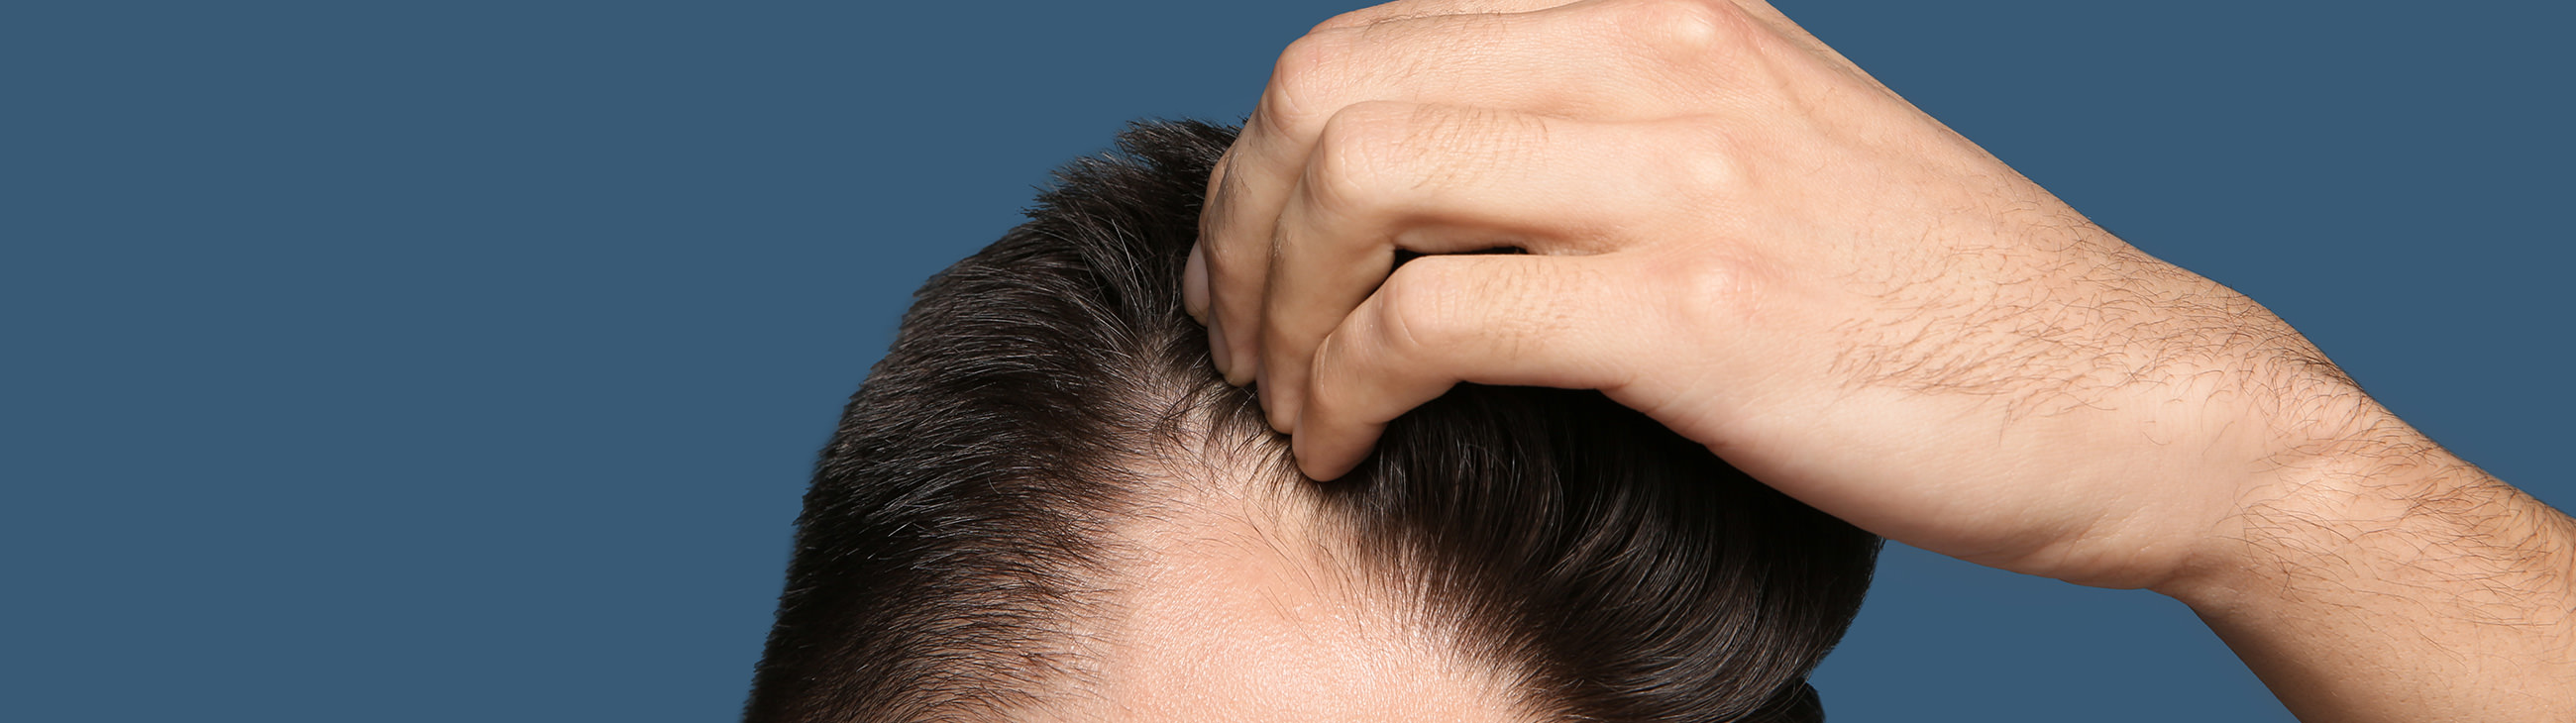 Eczema on the scalp